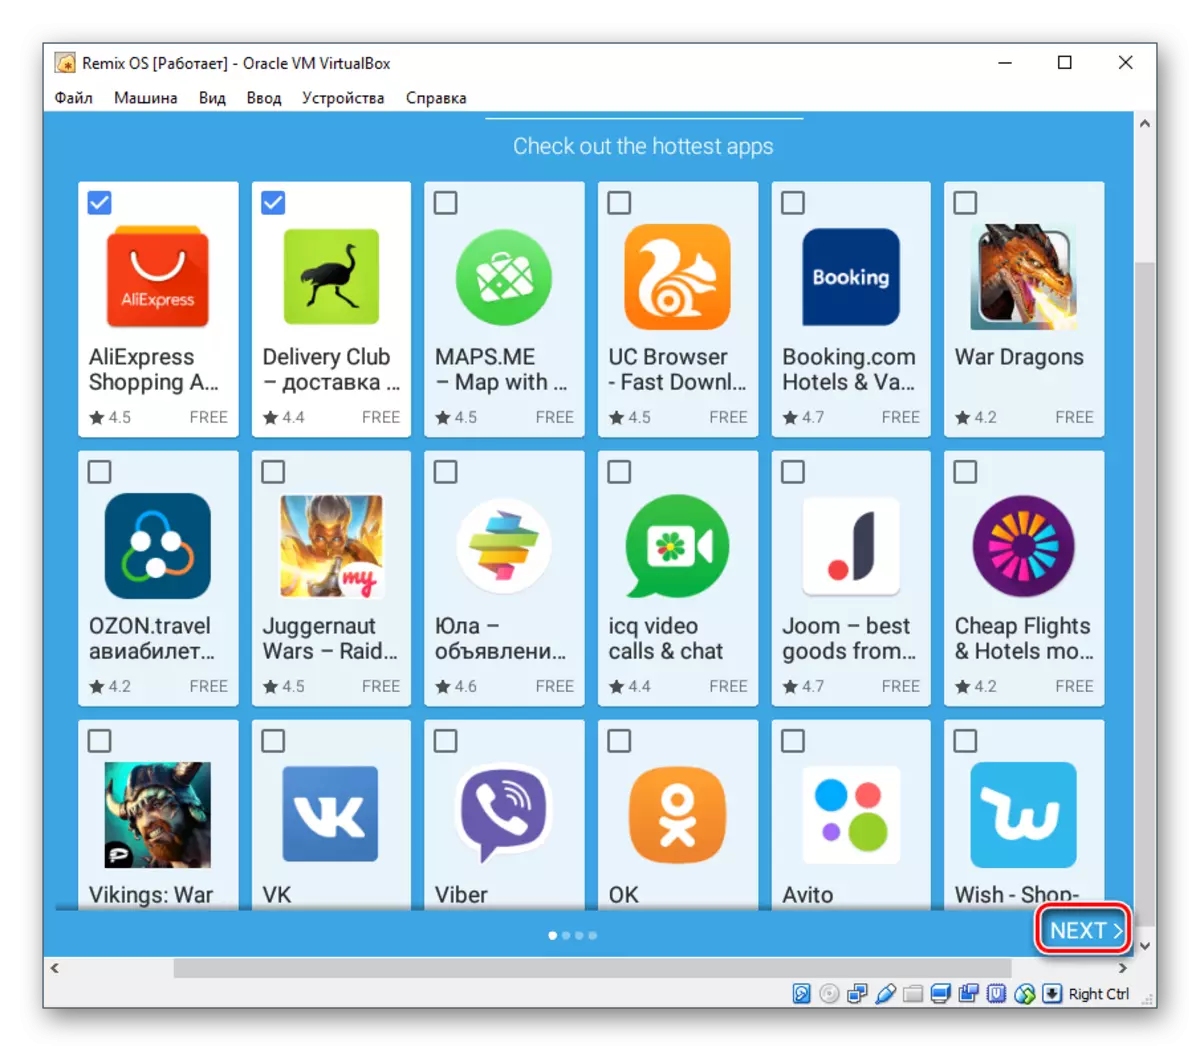 Remix OS aplikacija za podešavanje ponuda u VirtualBox